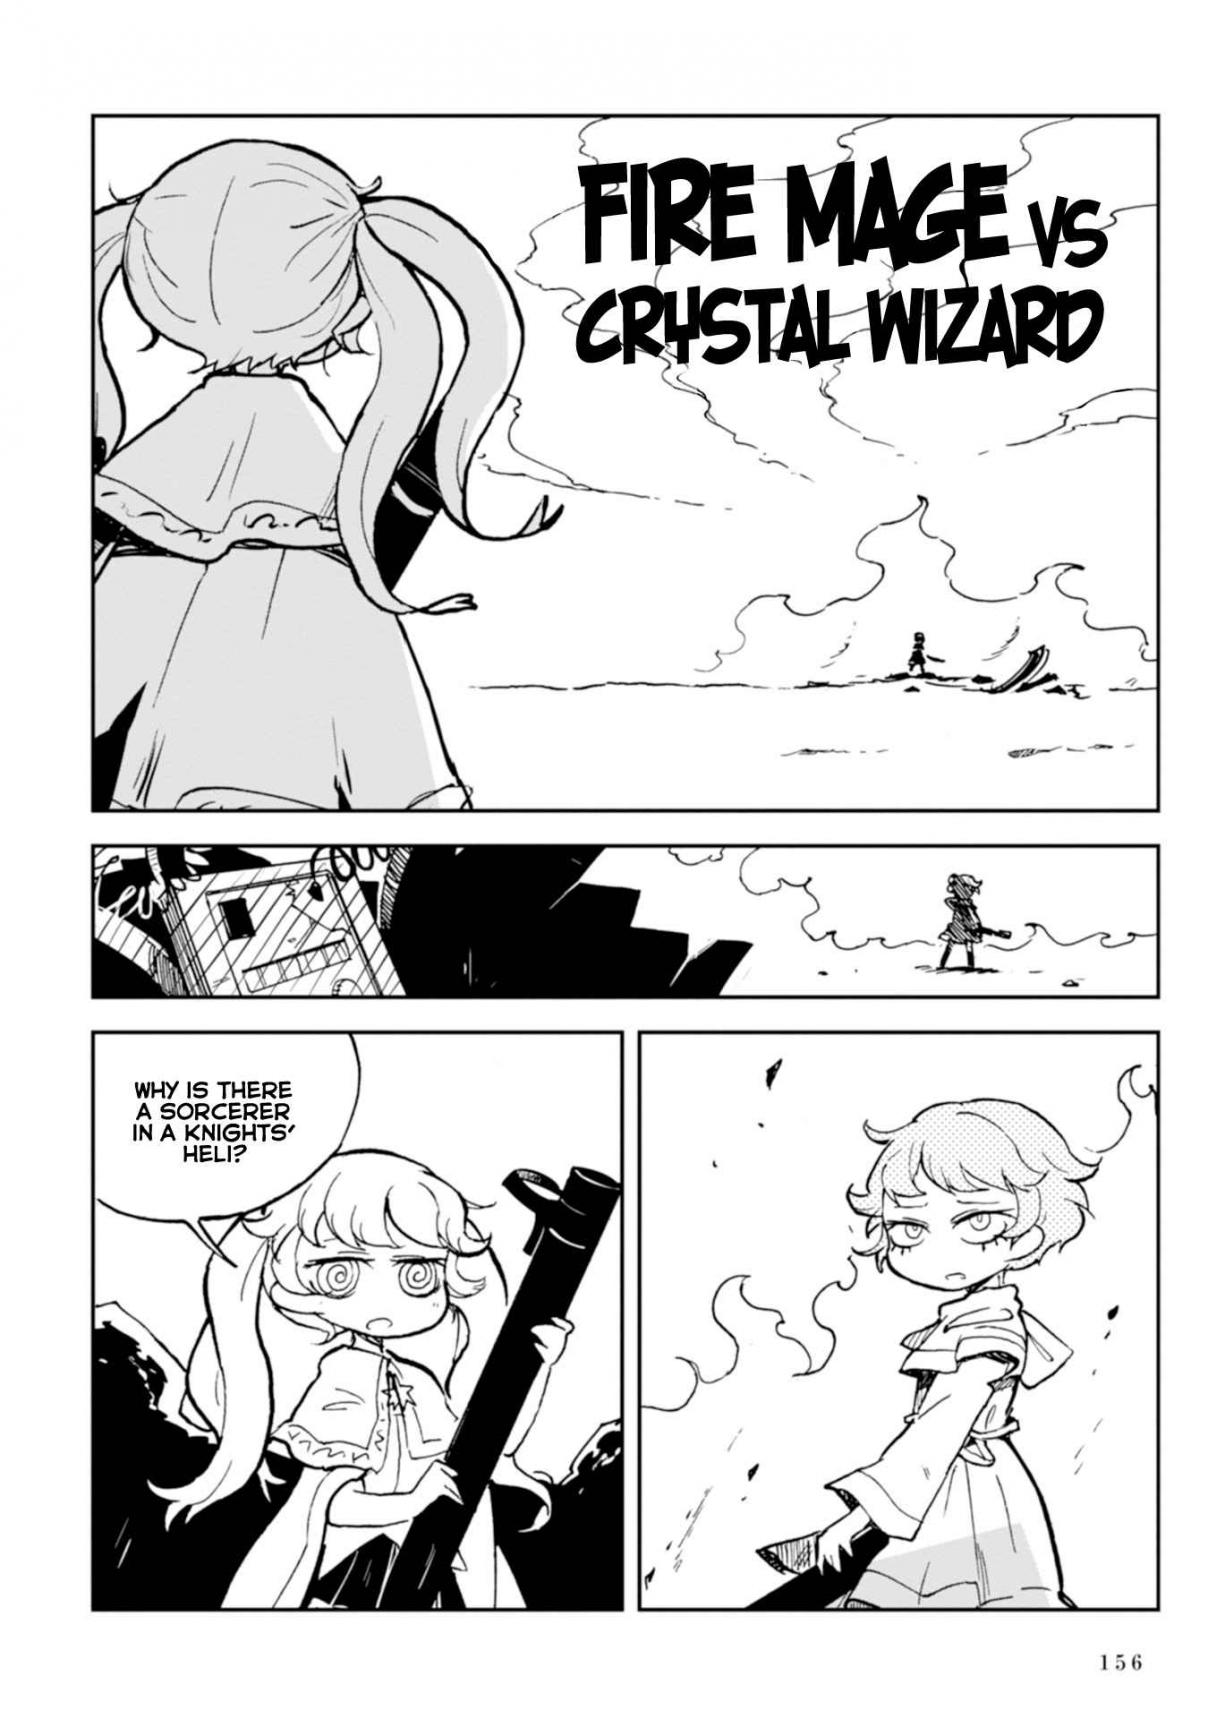 Spectral Wizard: Saikyou no Mahou wo Meguru Bouken Vol. 1 Ch. 3 Fire Mage vs Crystal Wizard